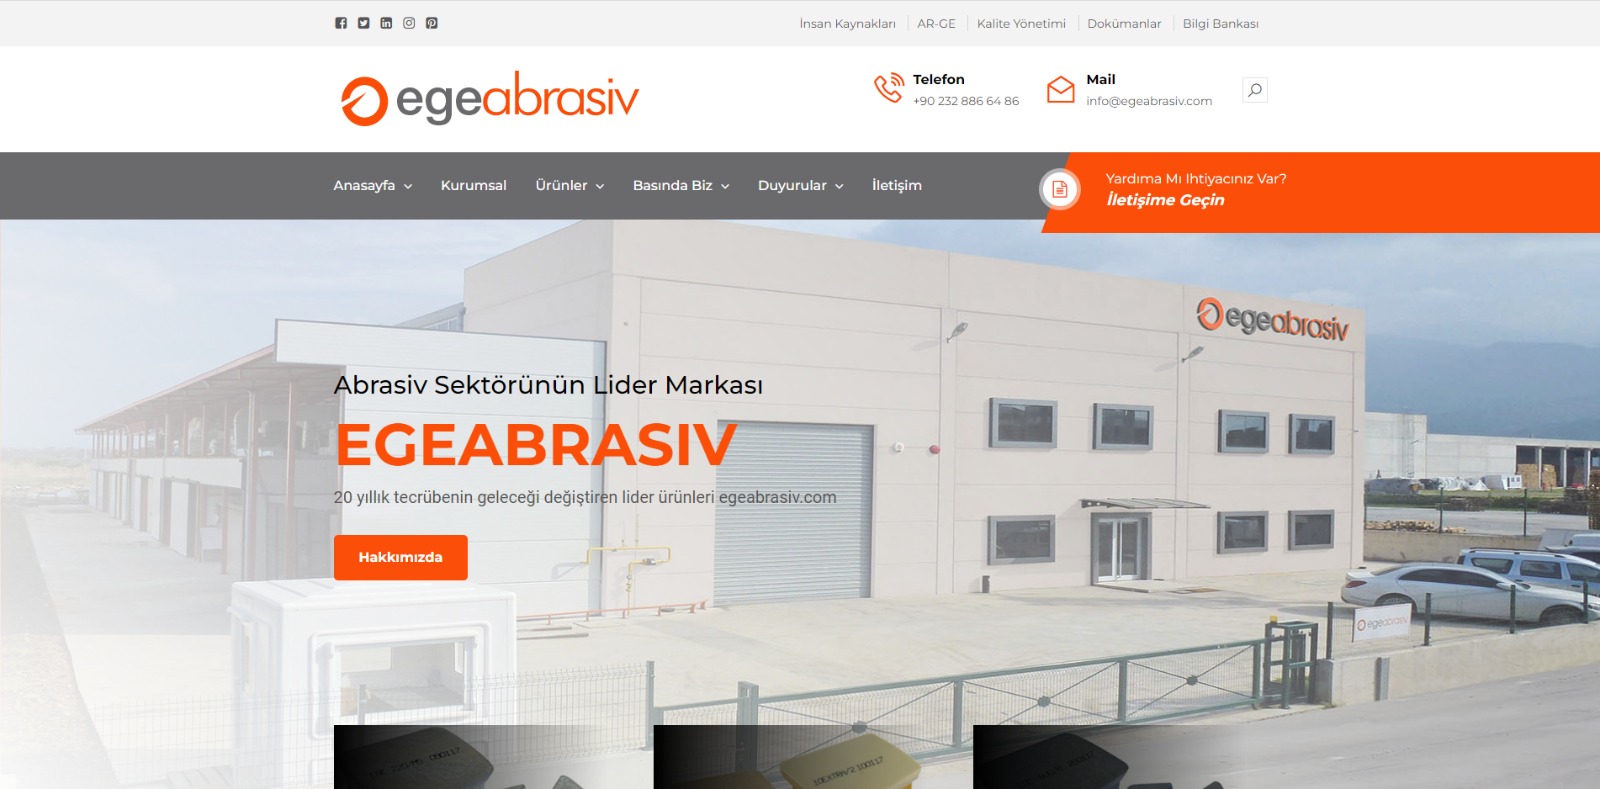 Egeabrasiv.com yeni arayüzüne kavuştu